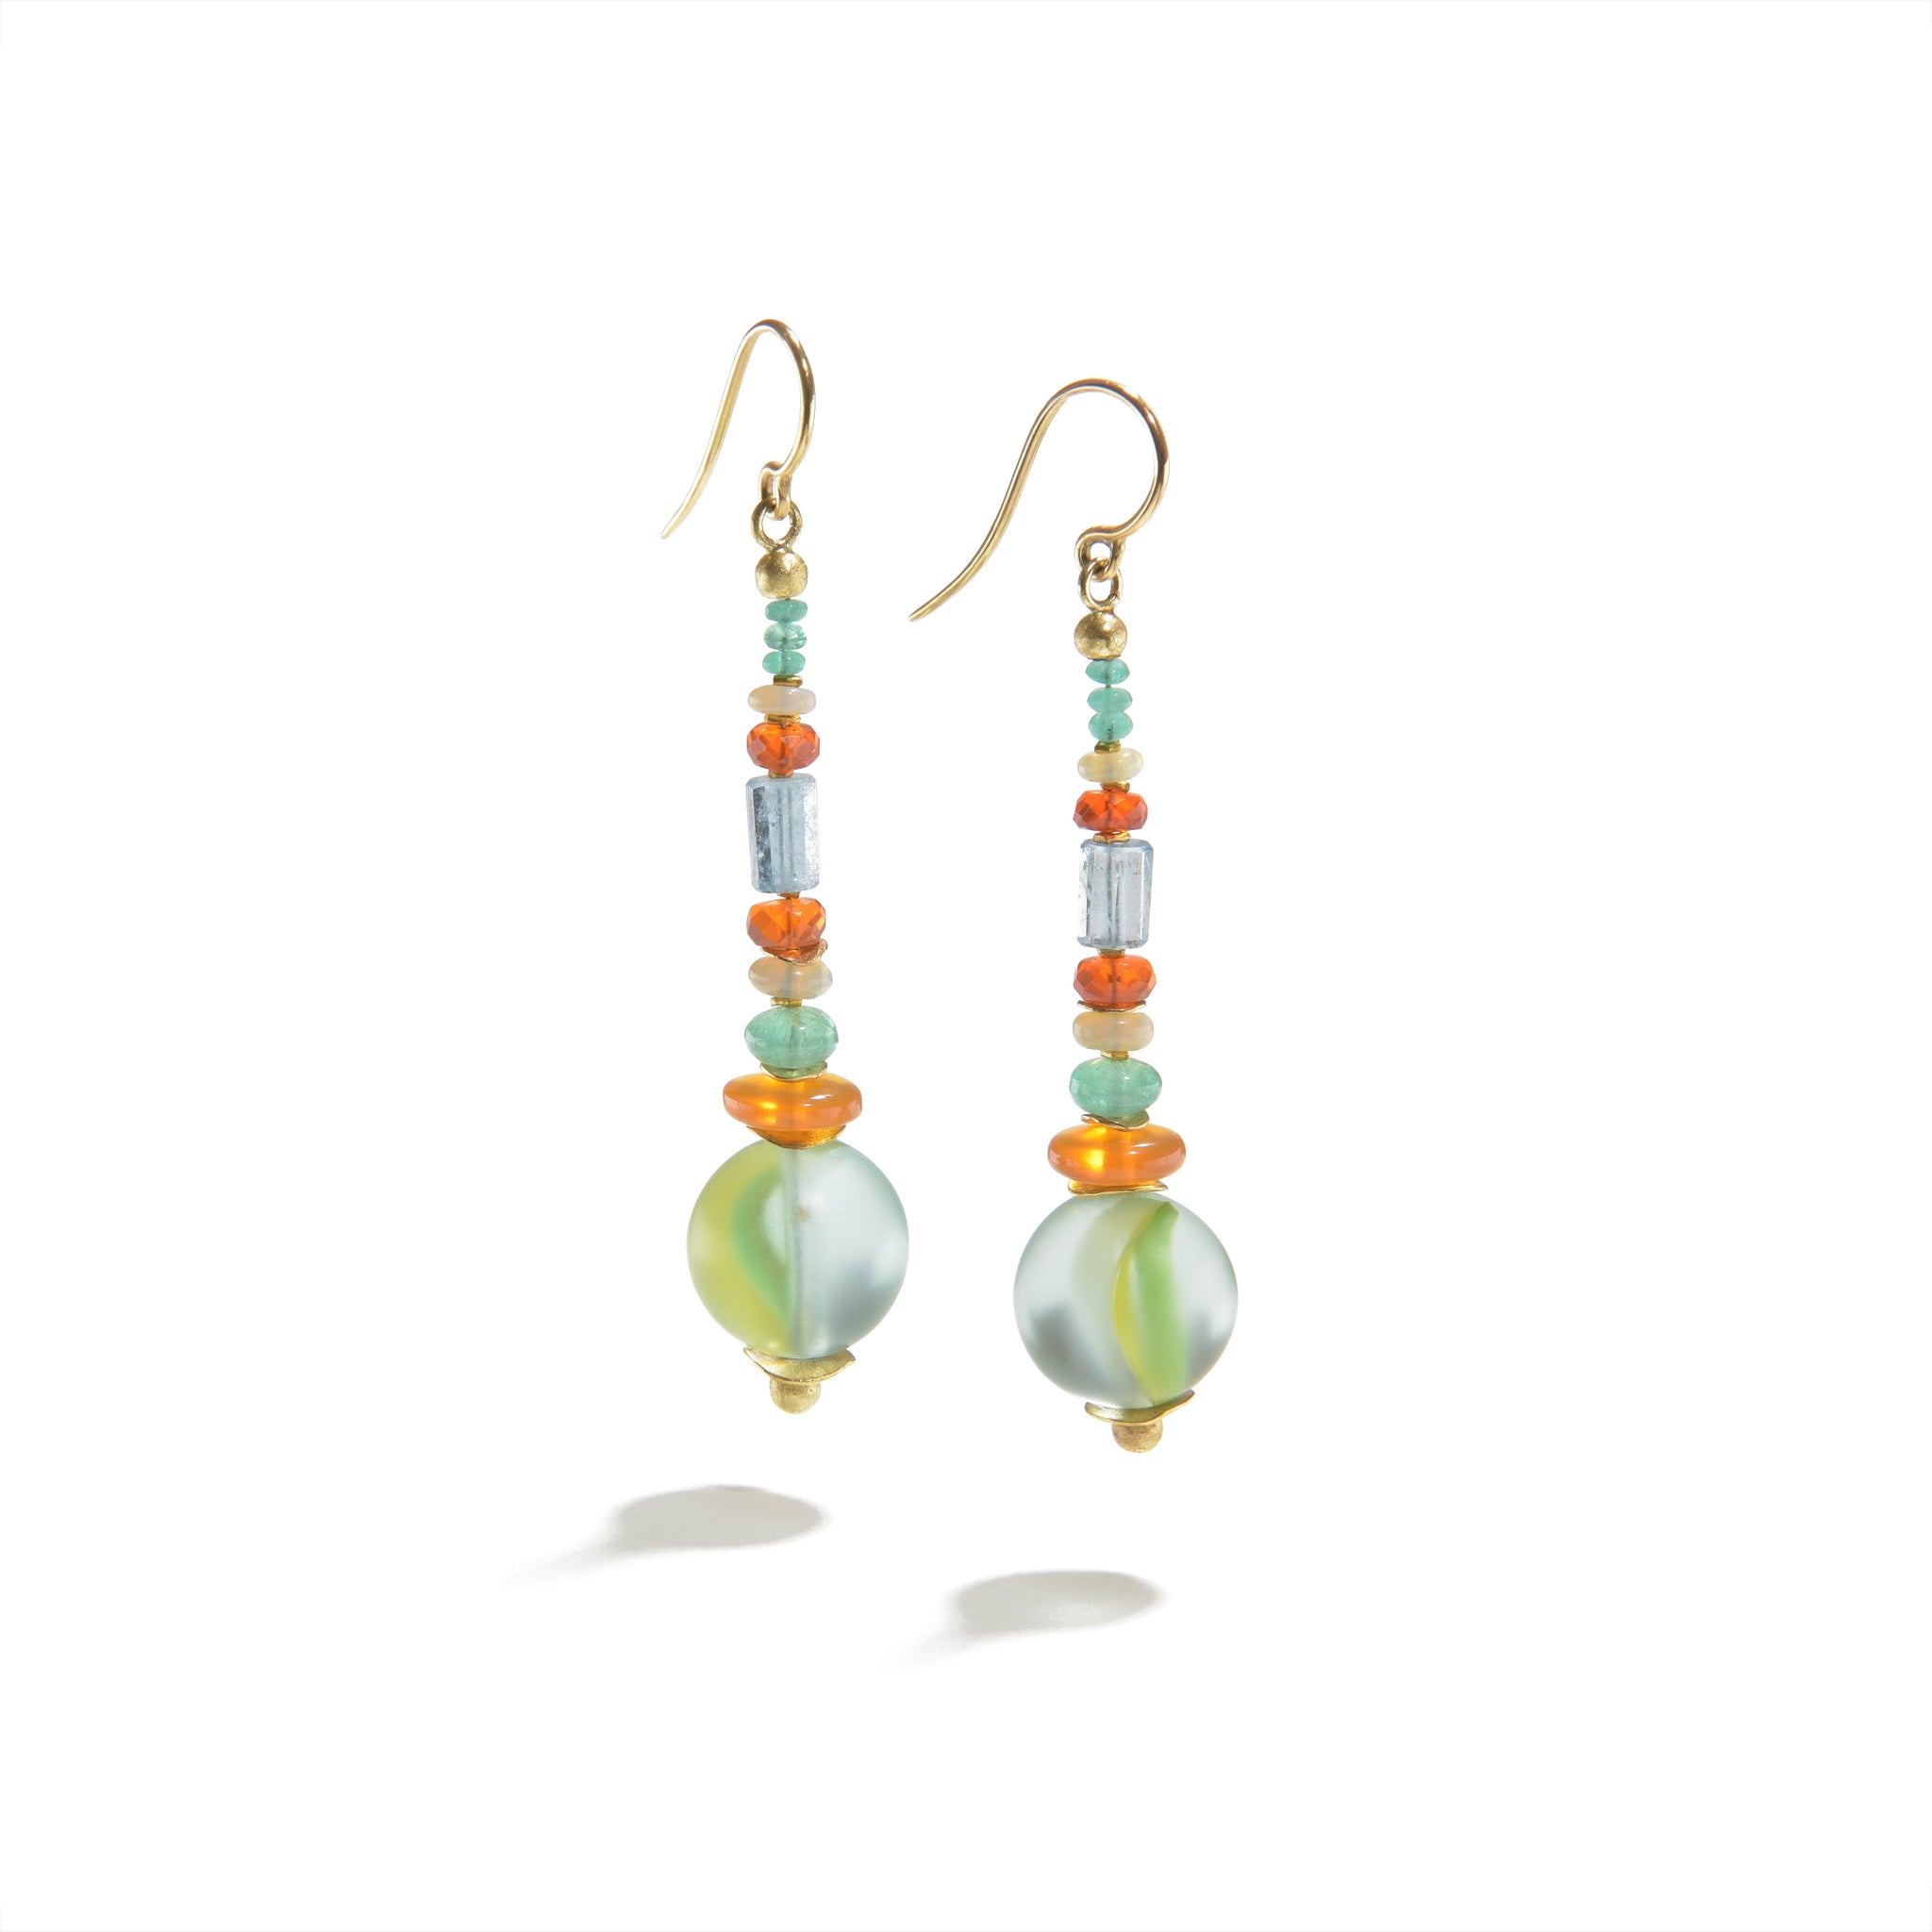 Fire Opal Earrings with Emeralds